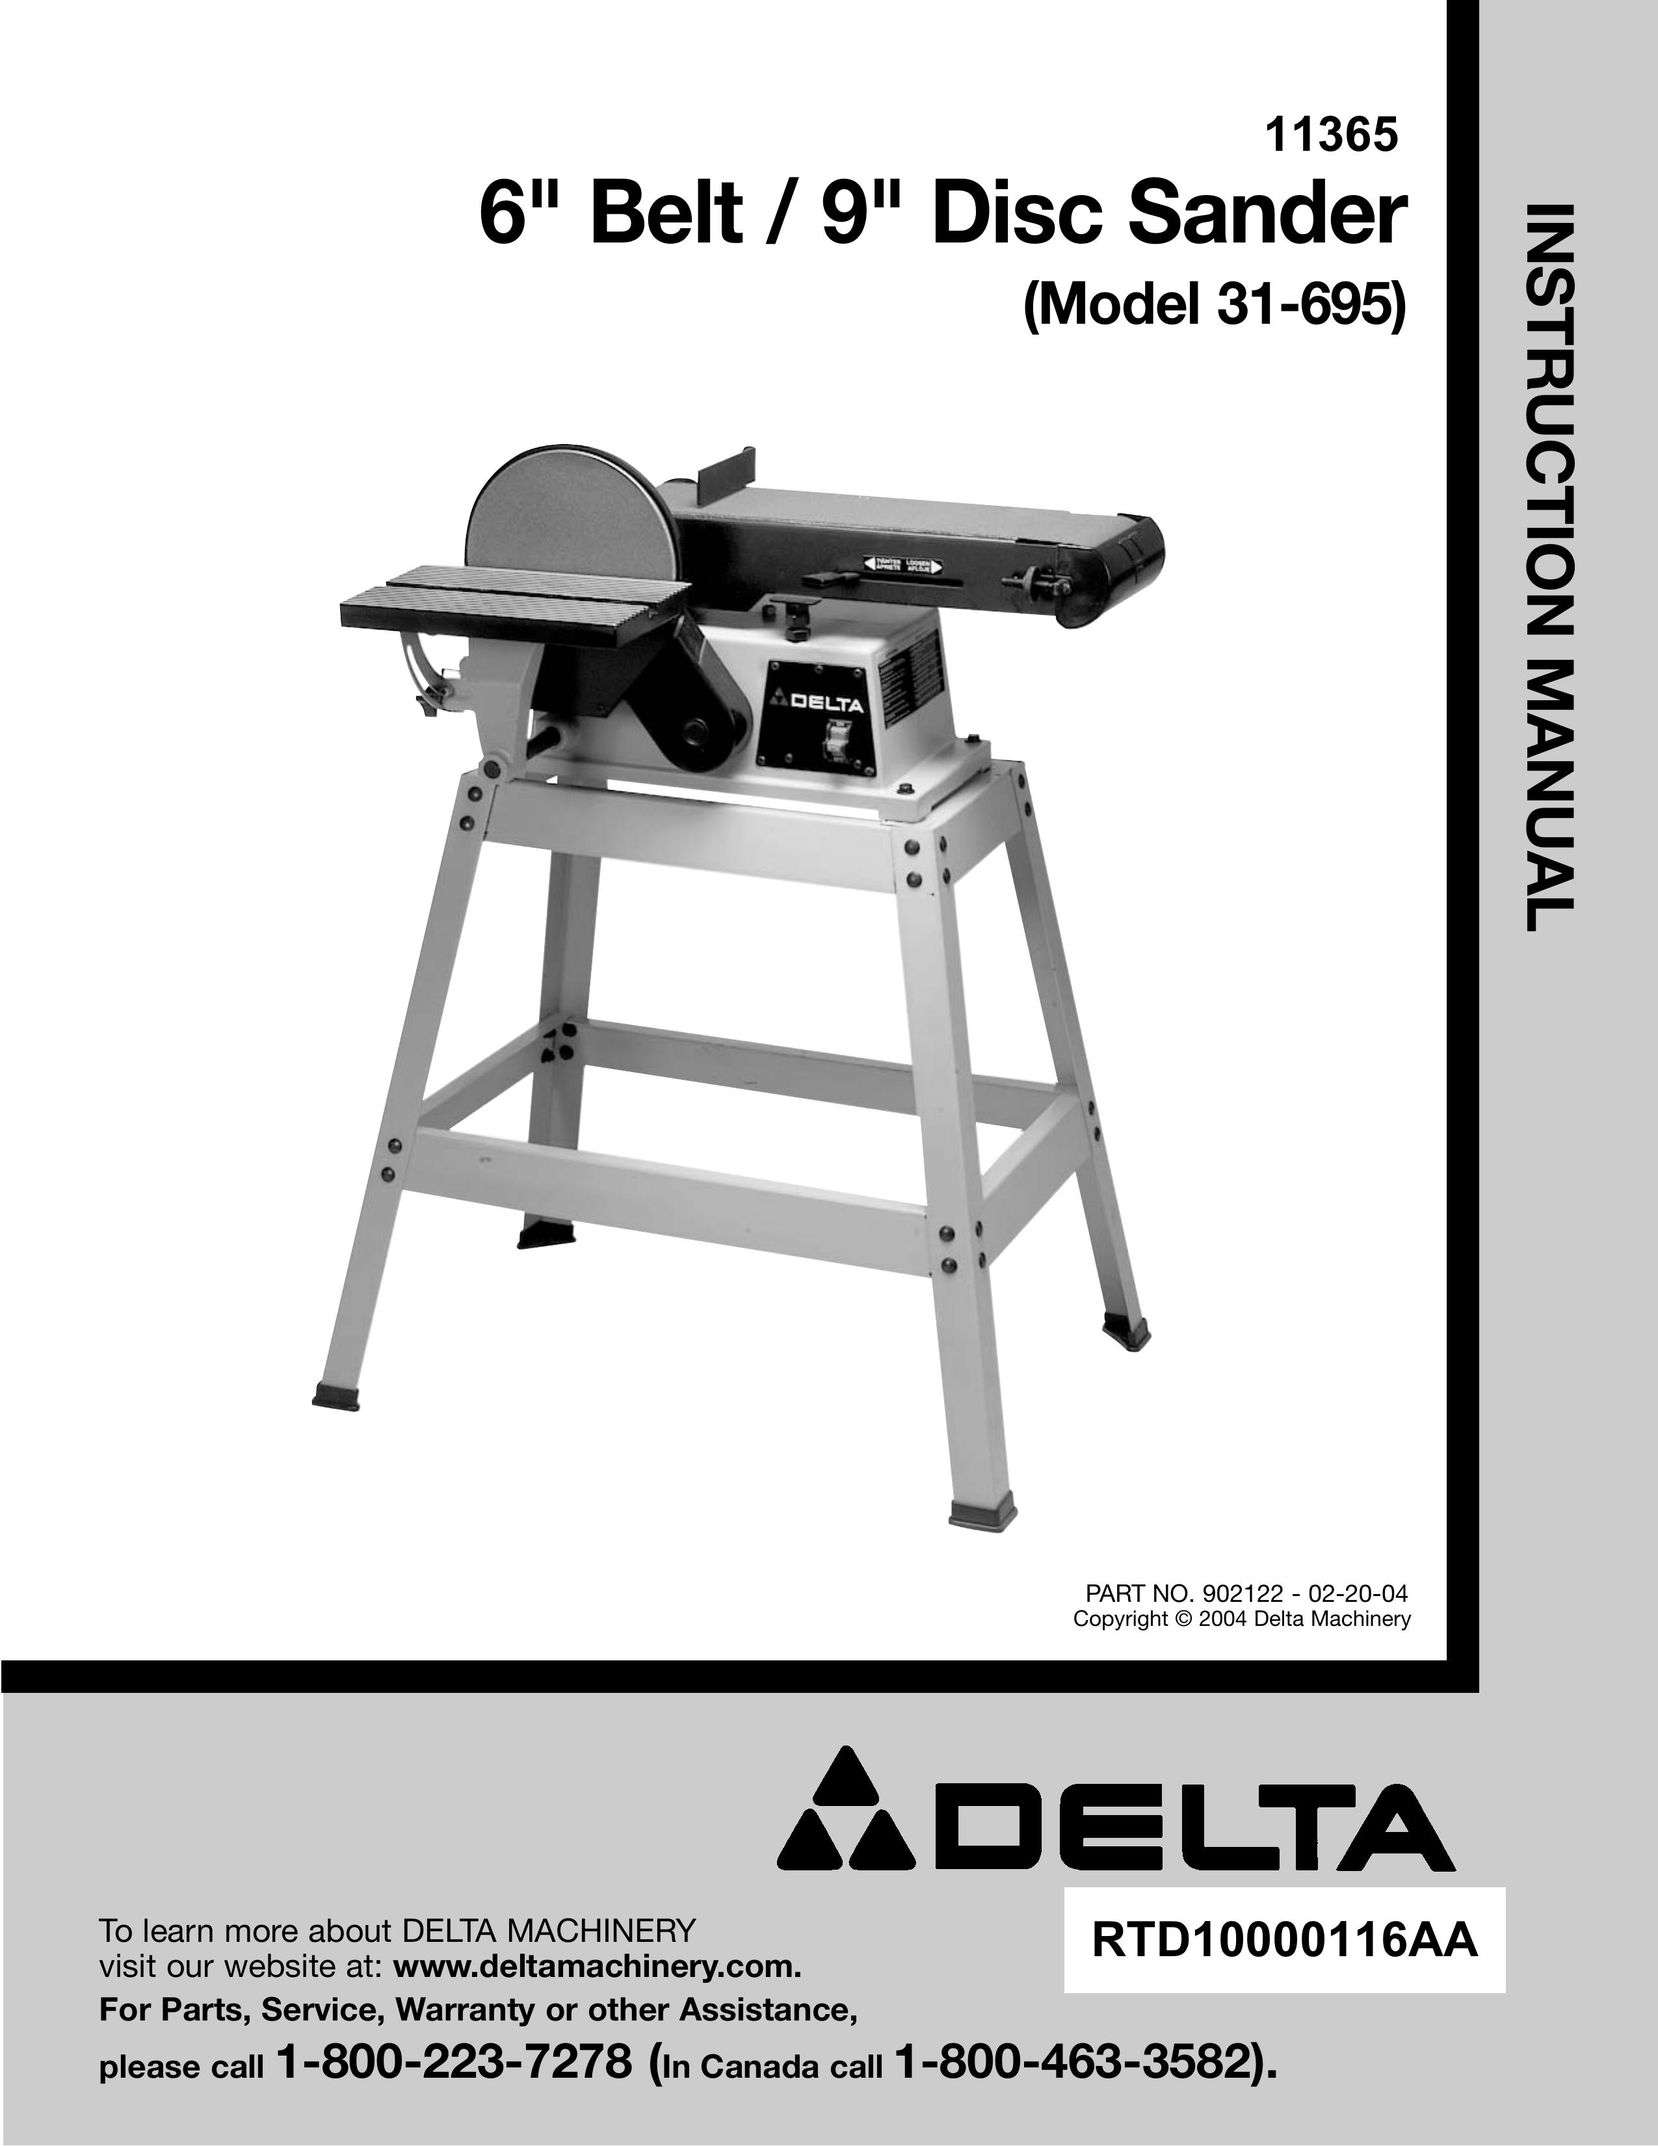 Delta (Model 31-695) Sander User Manual